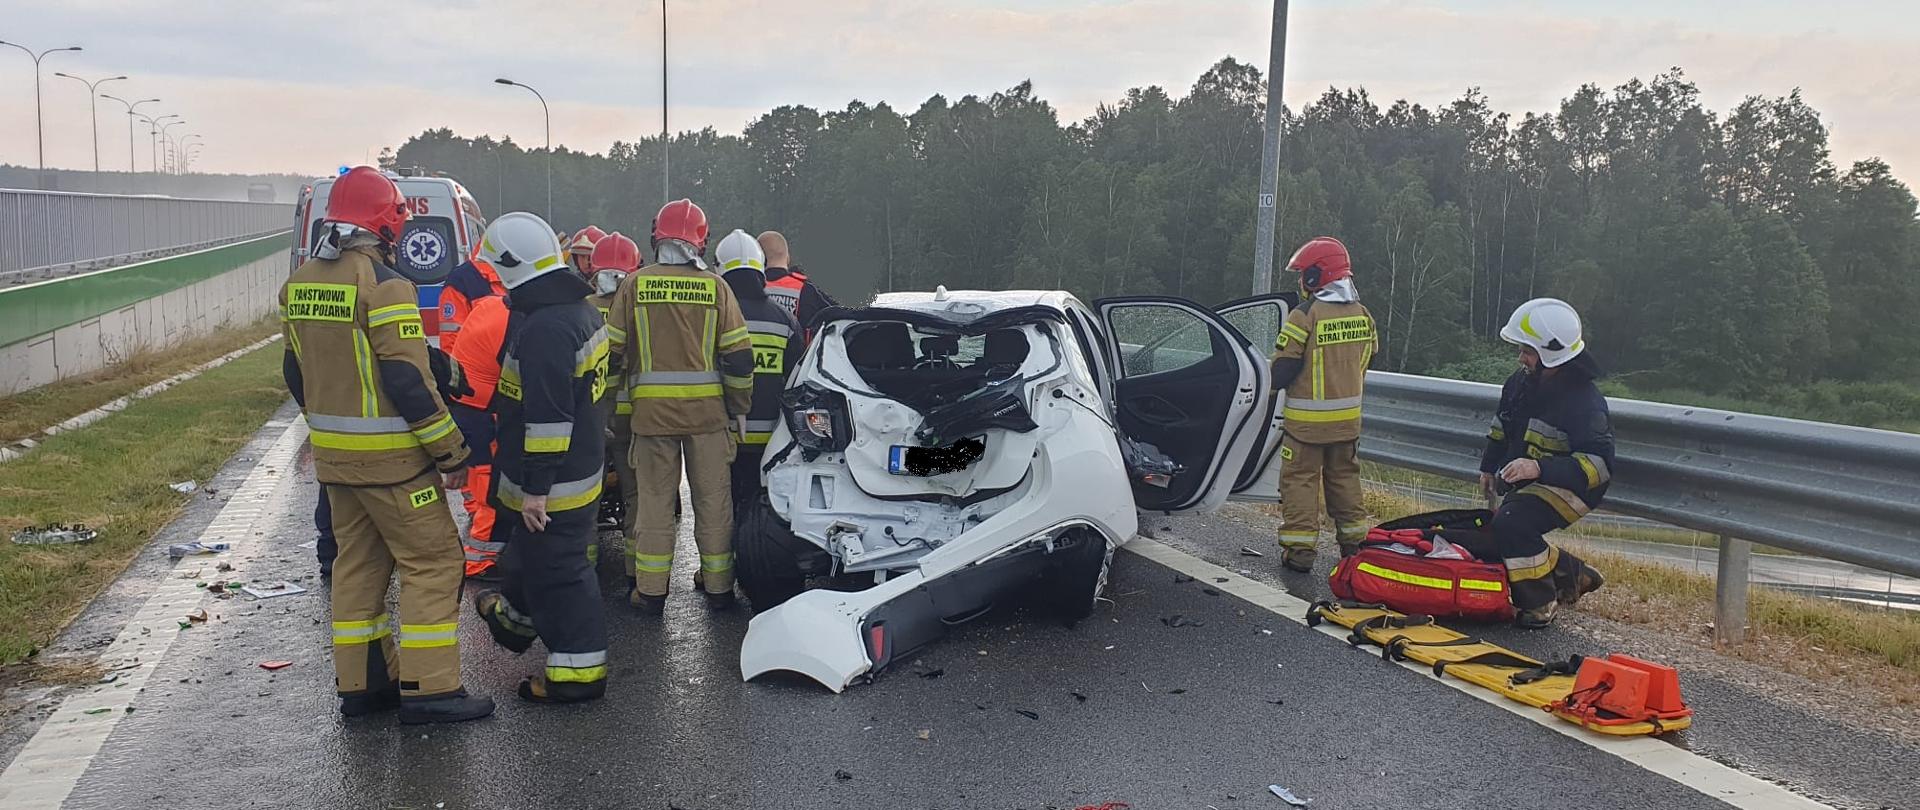 Na zdjęciu widać samochód osobowy Toyota Yaris, który dachował. Obok pojazdu znajdują się strażacy i ratownicy medyczni udzielający pomocy poszkodowanemu kierowcy. 